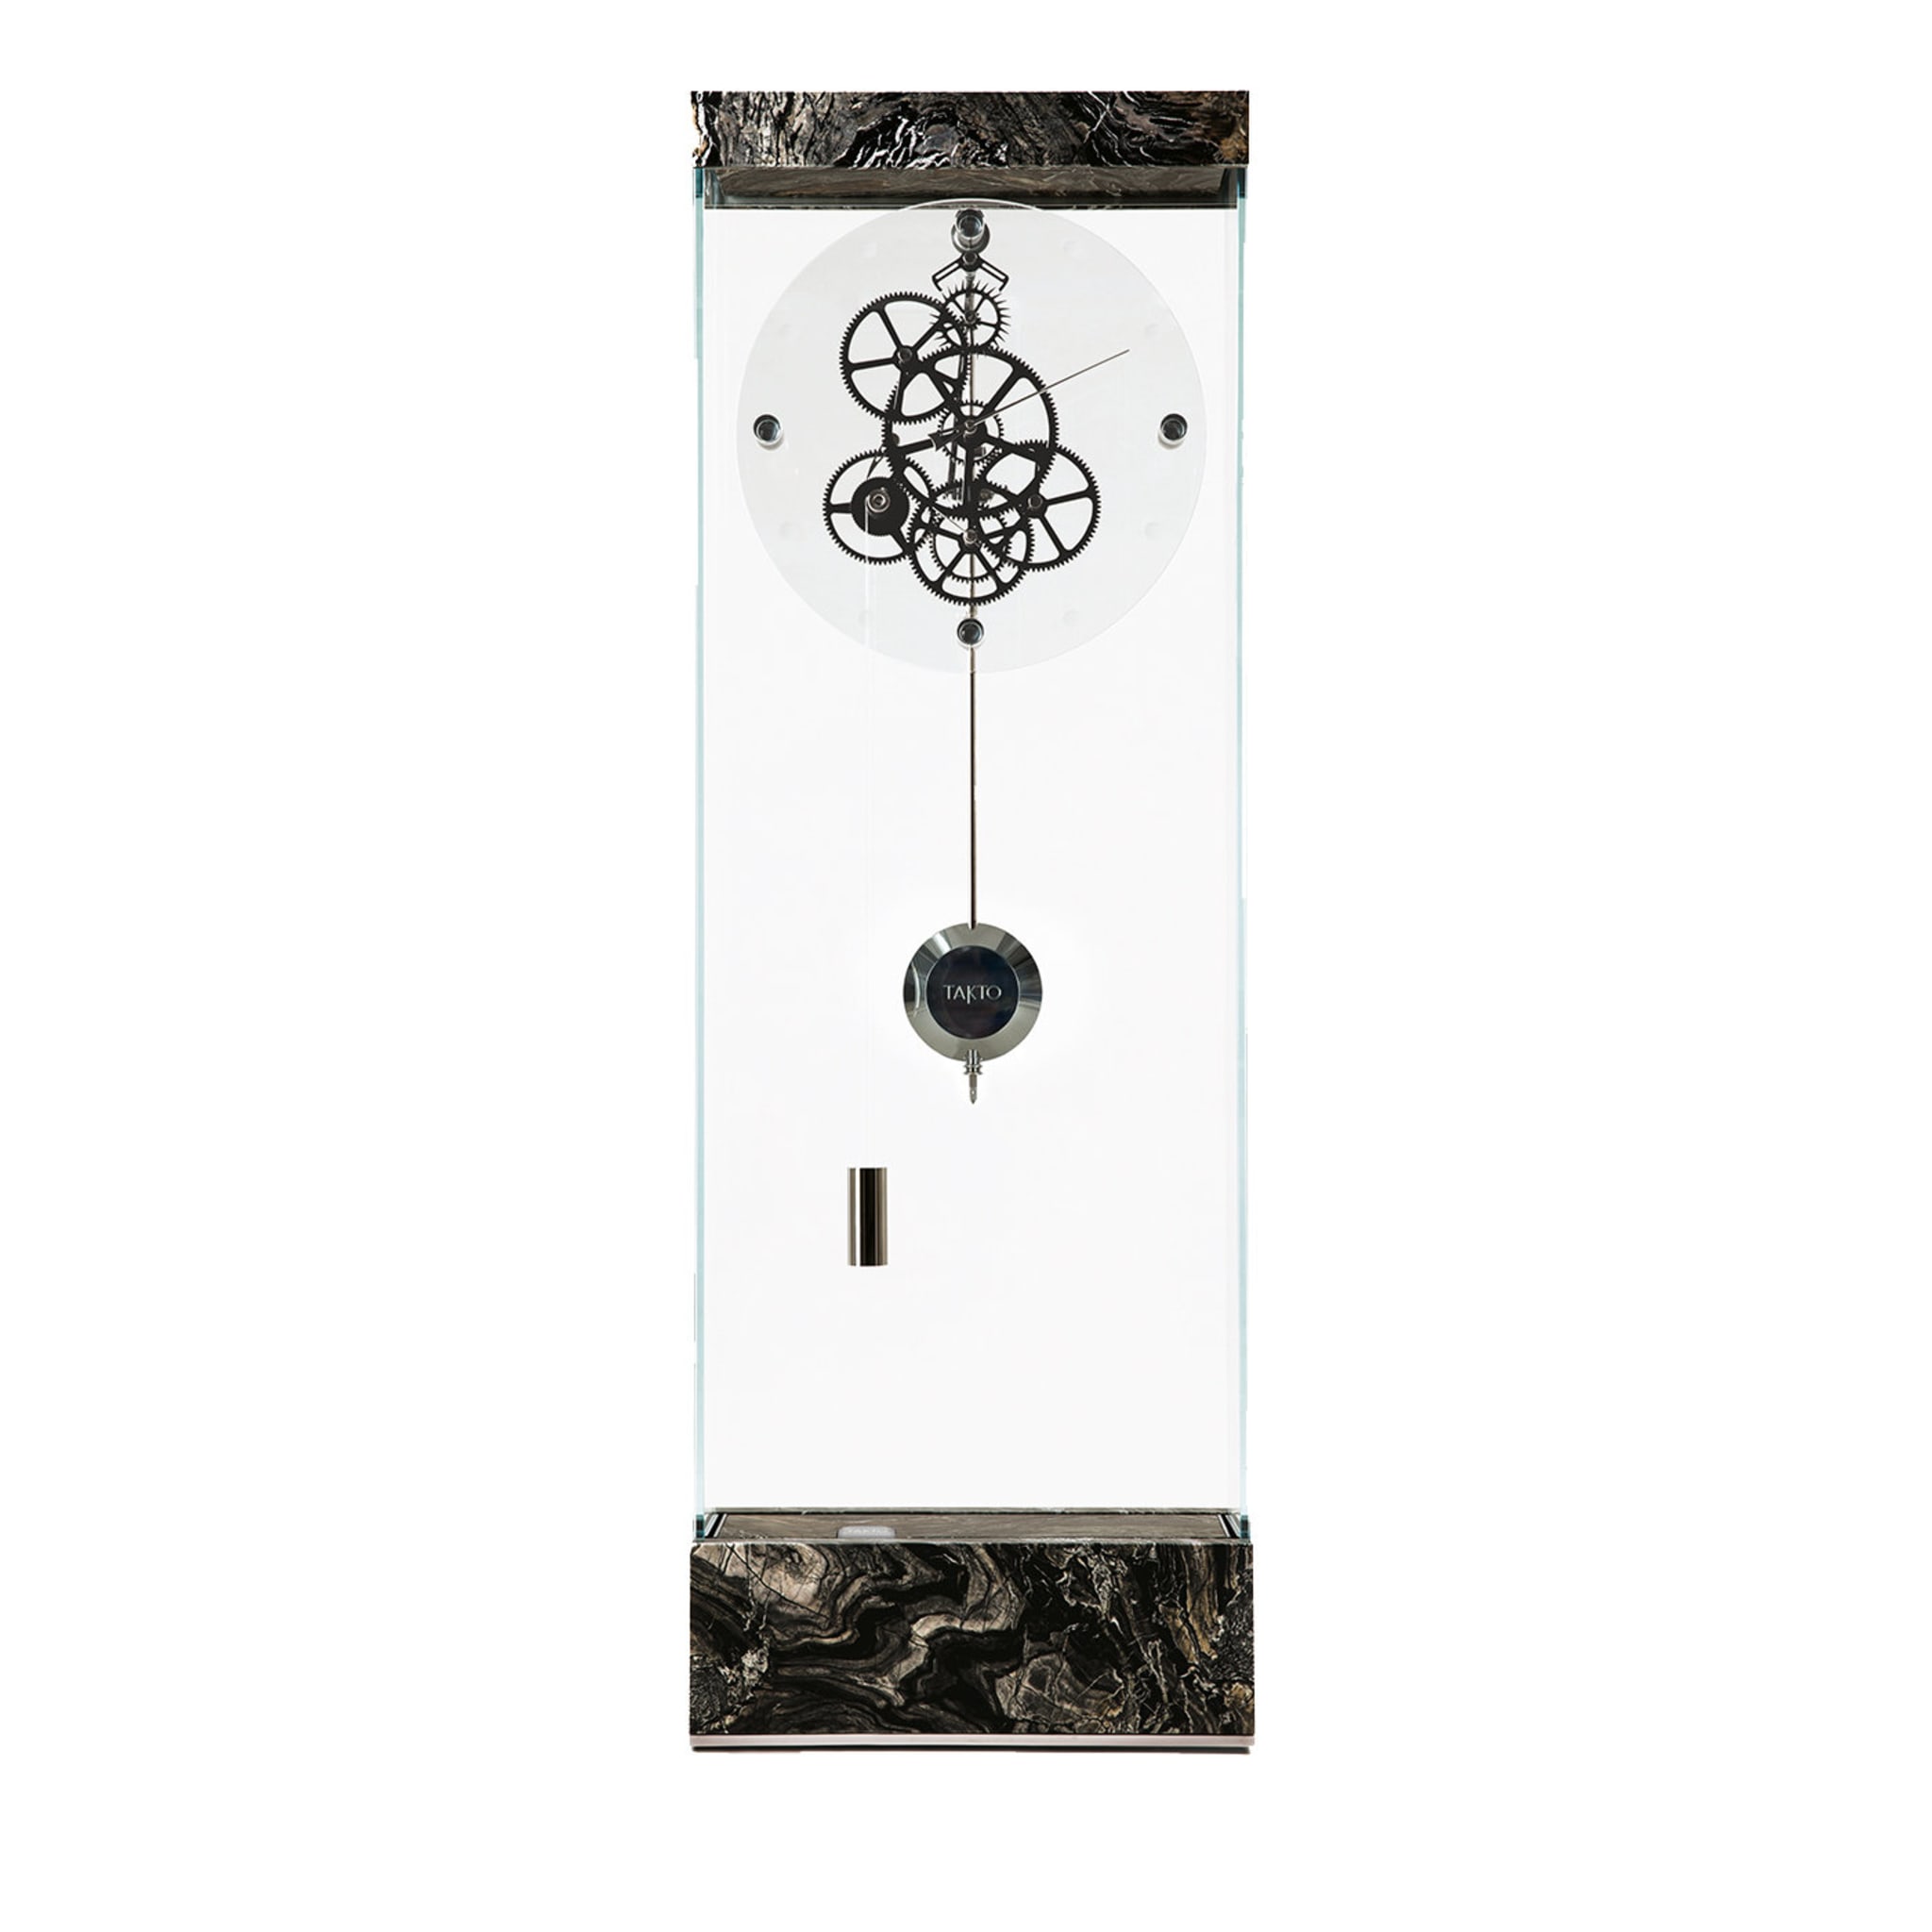 Adagio Silver Wave Marble Floor Pendulum Clock - Main view